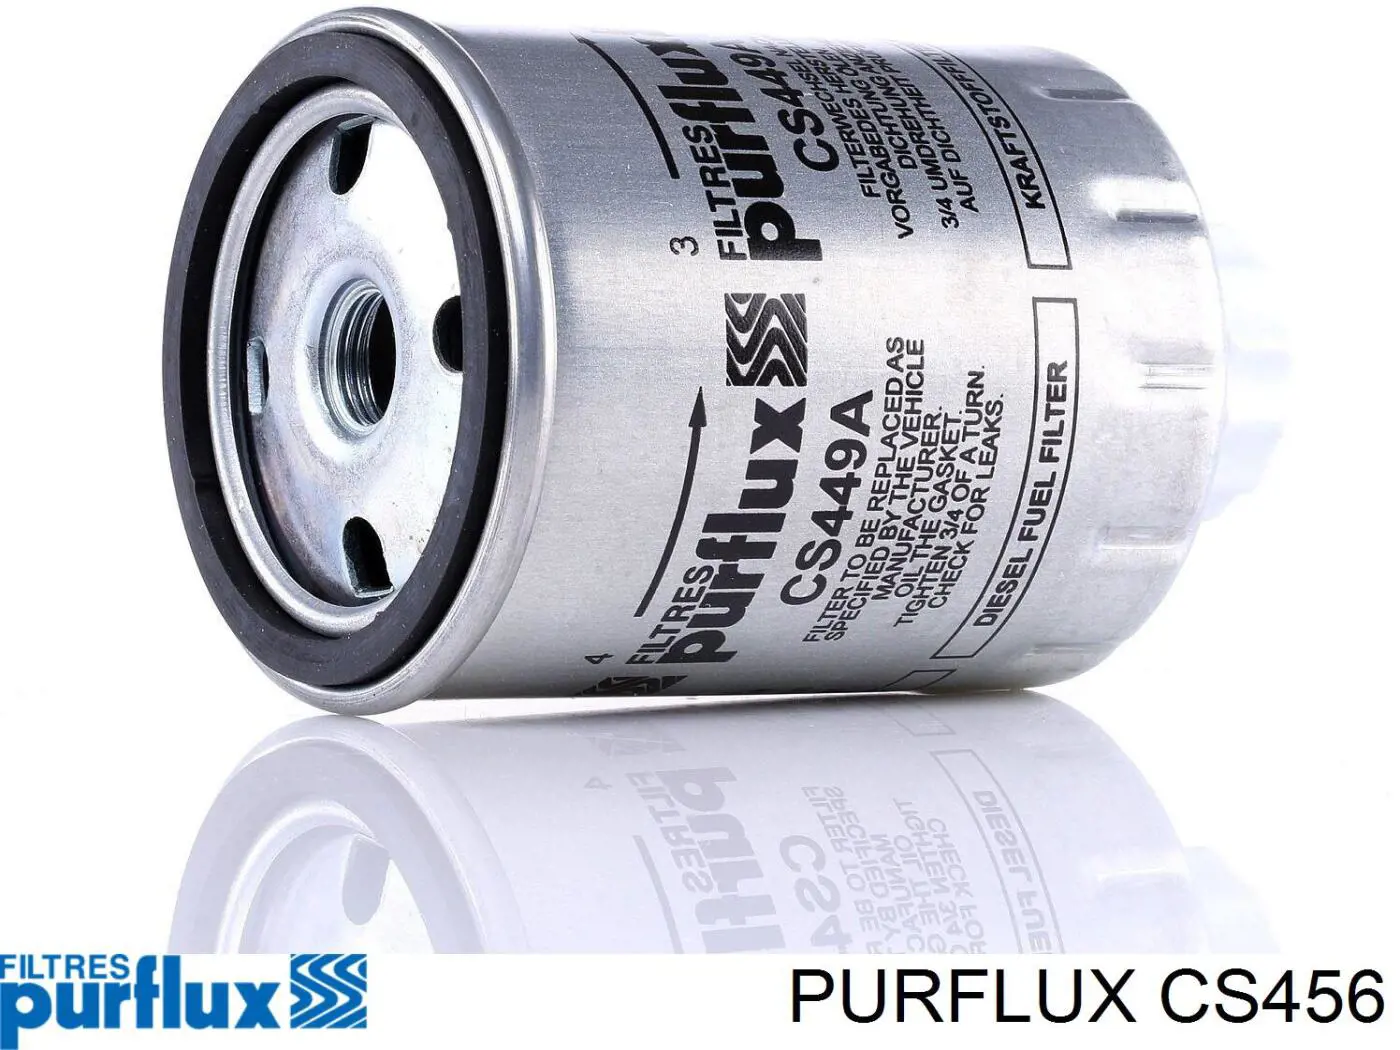 CS456 Purflux filtro combustible